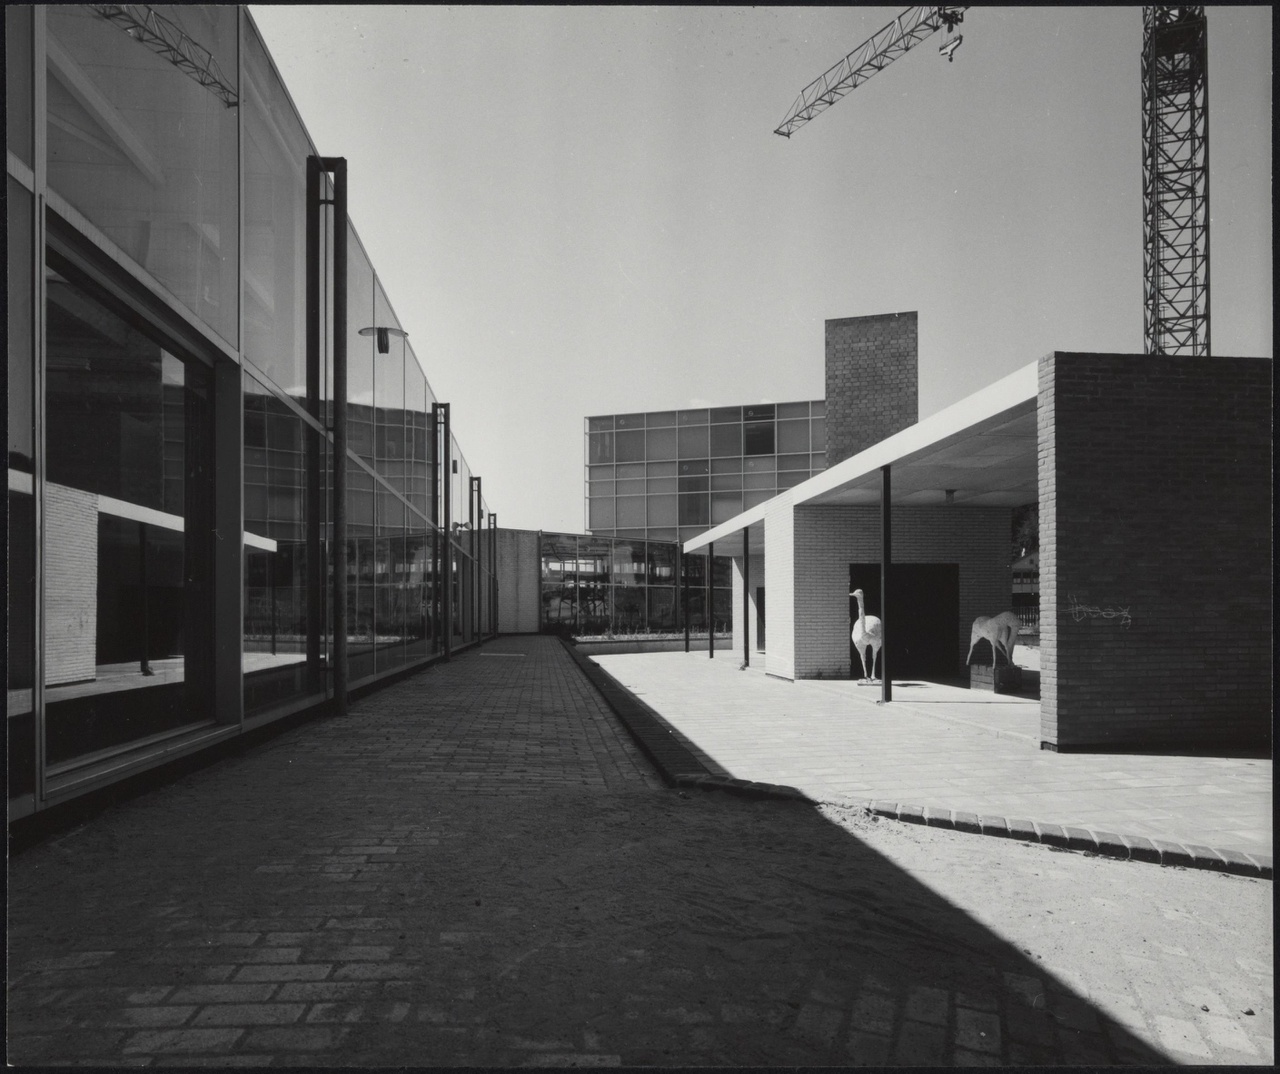 Afbeelding van Kunstacademie Arnhem, ca.1963, binnenterrein vanuit het oosten